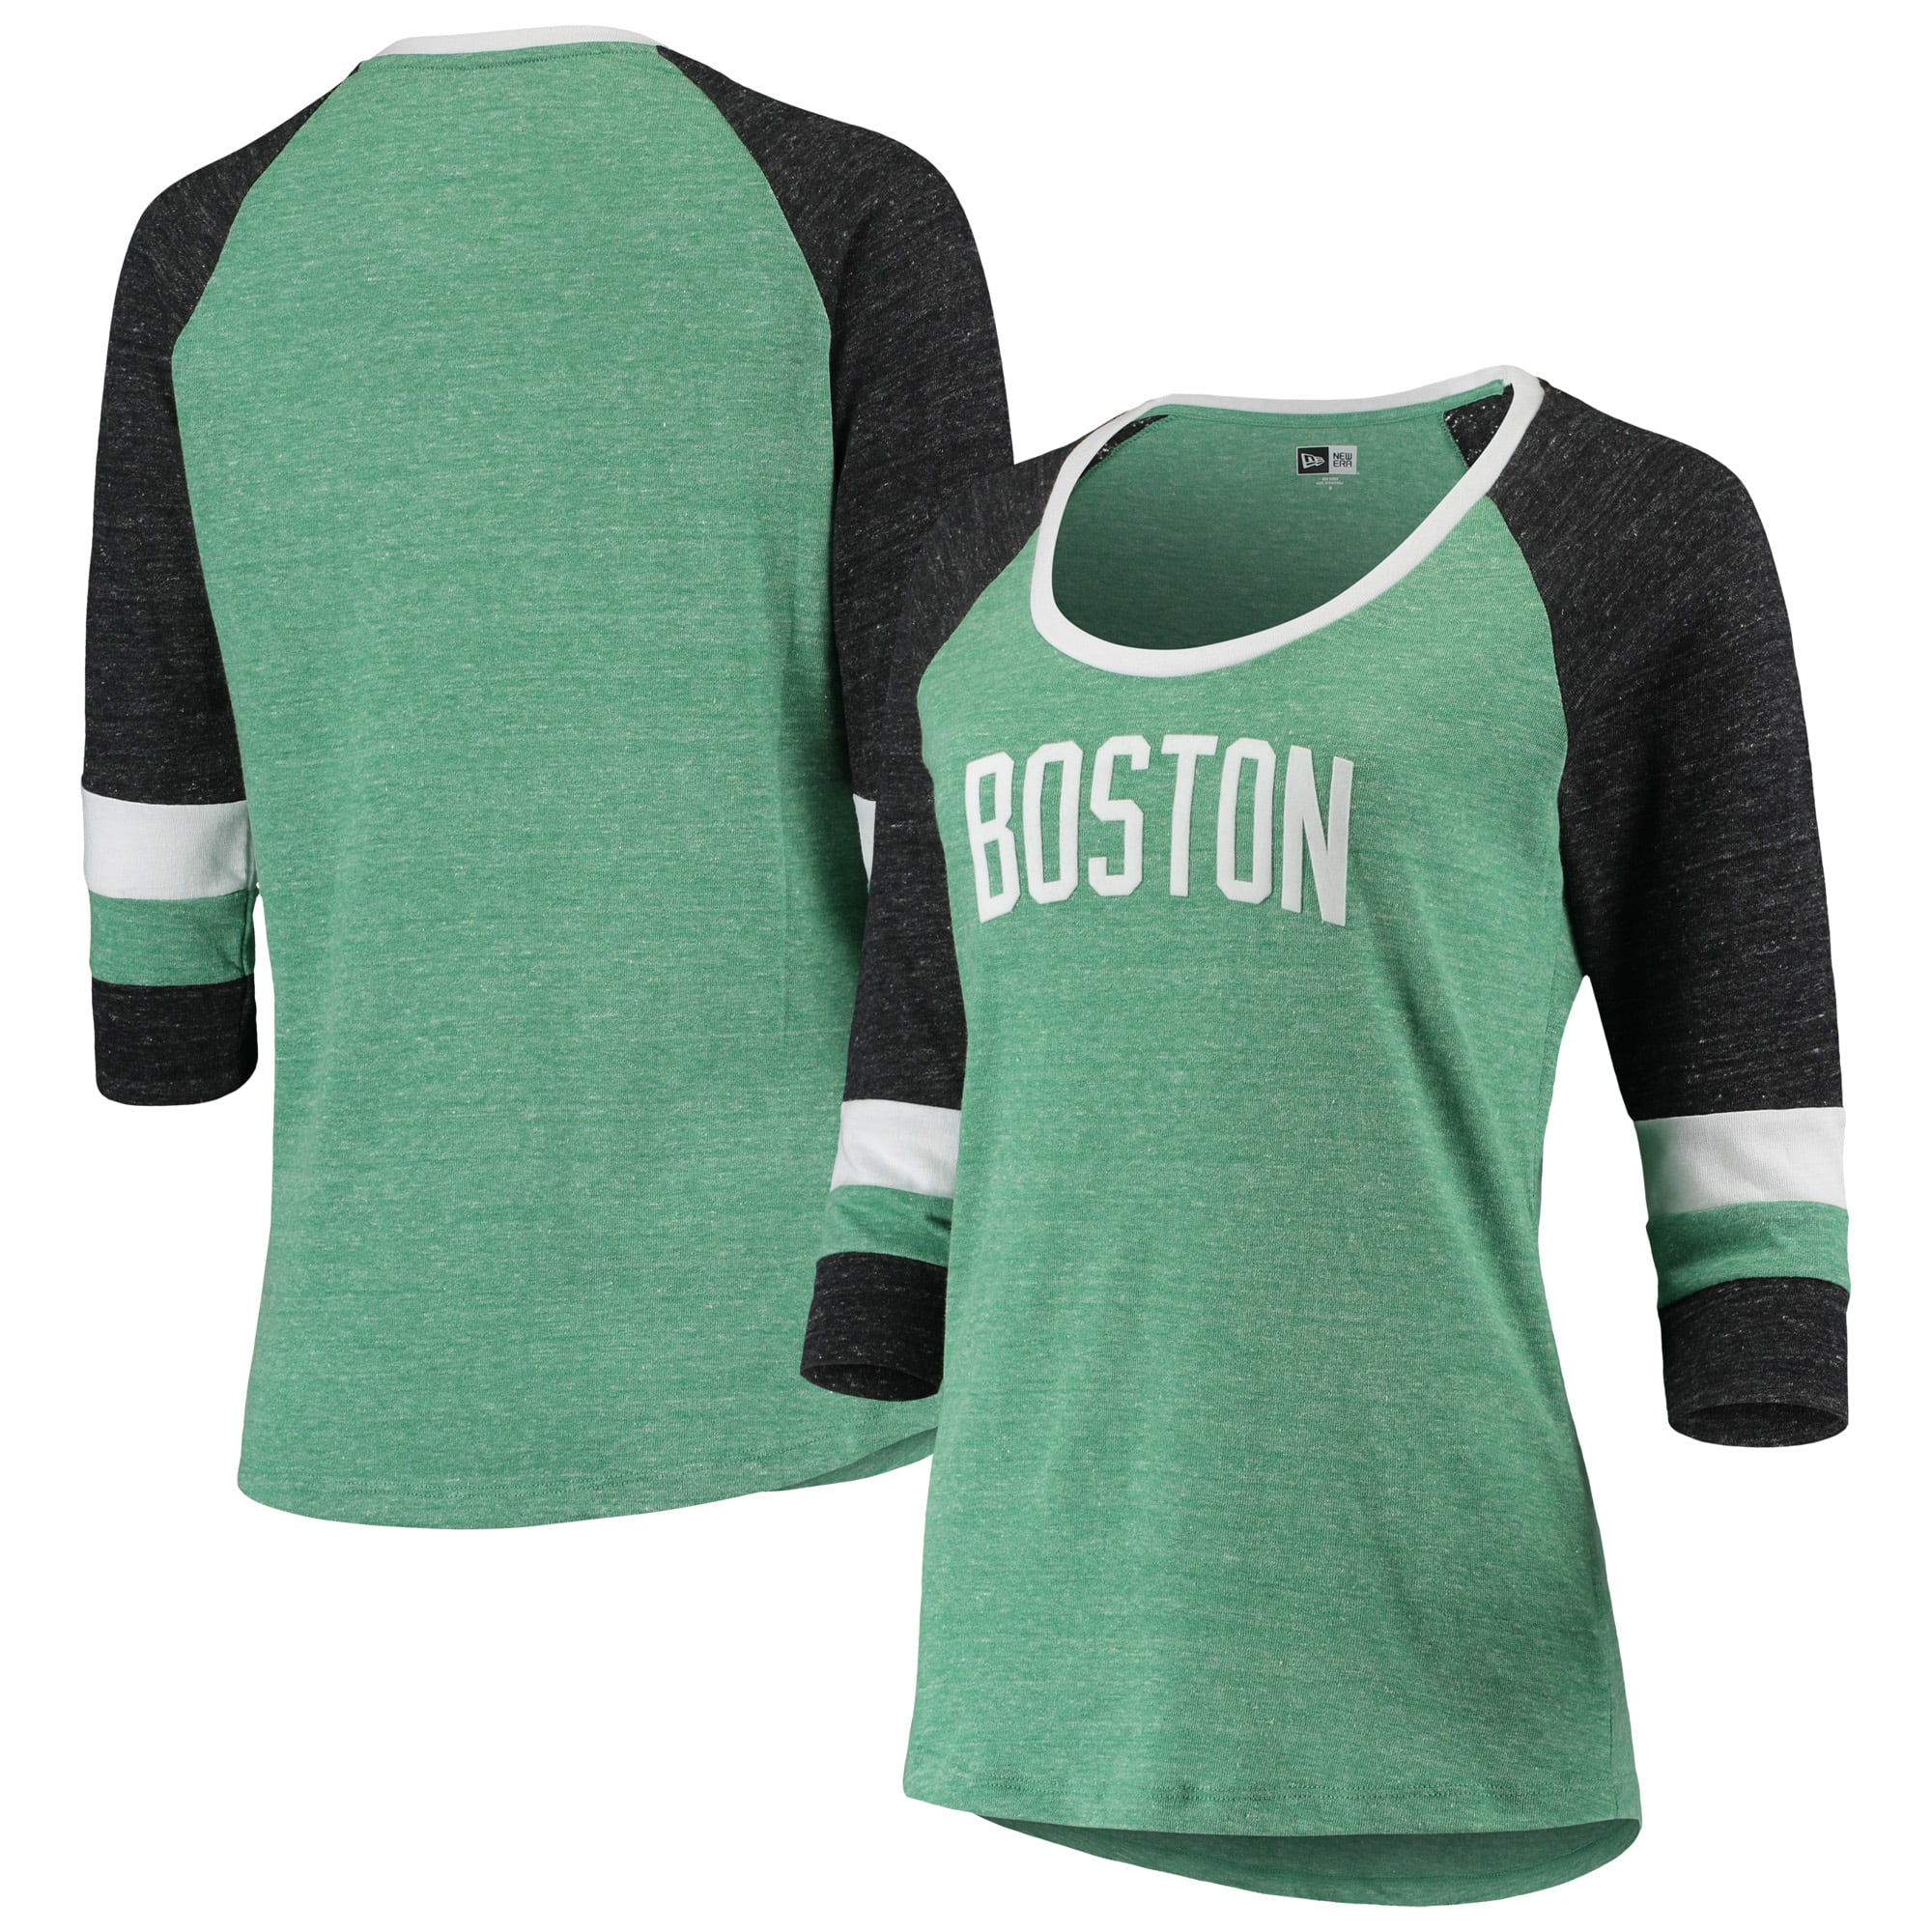 new boston jersey